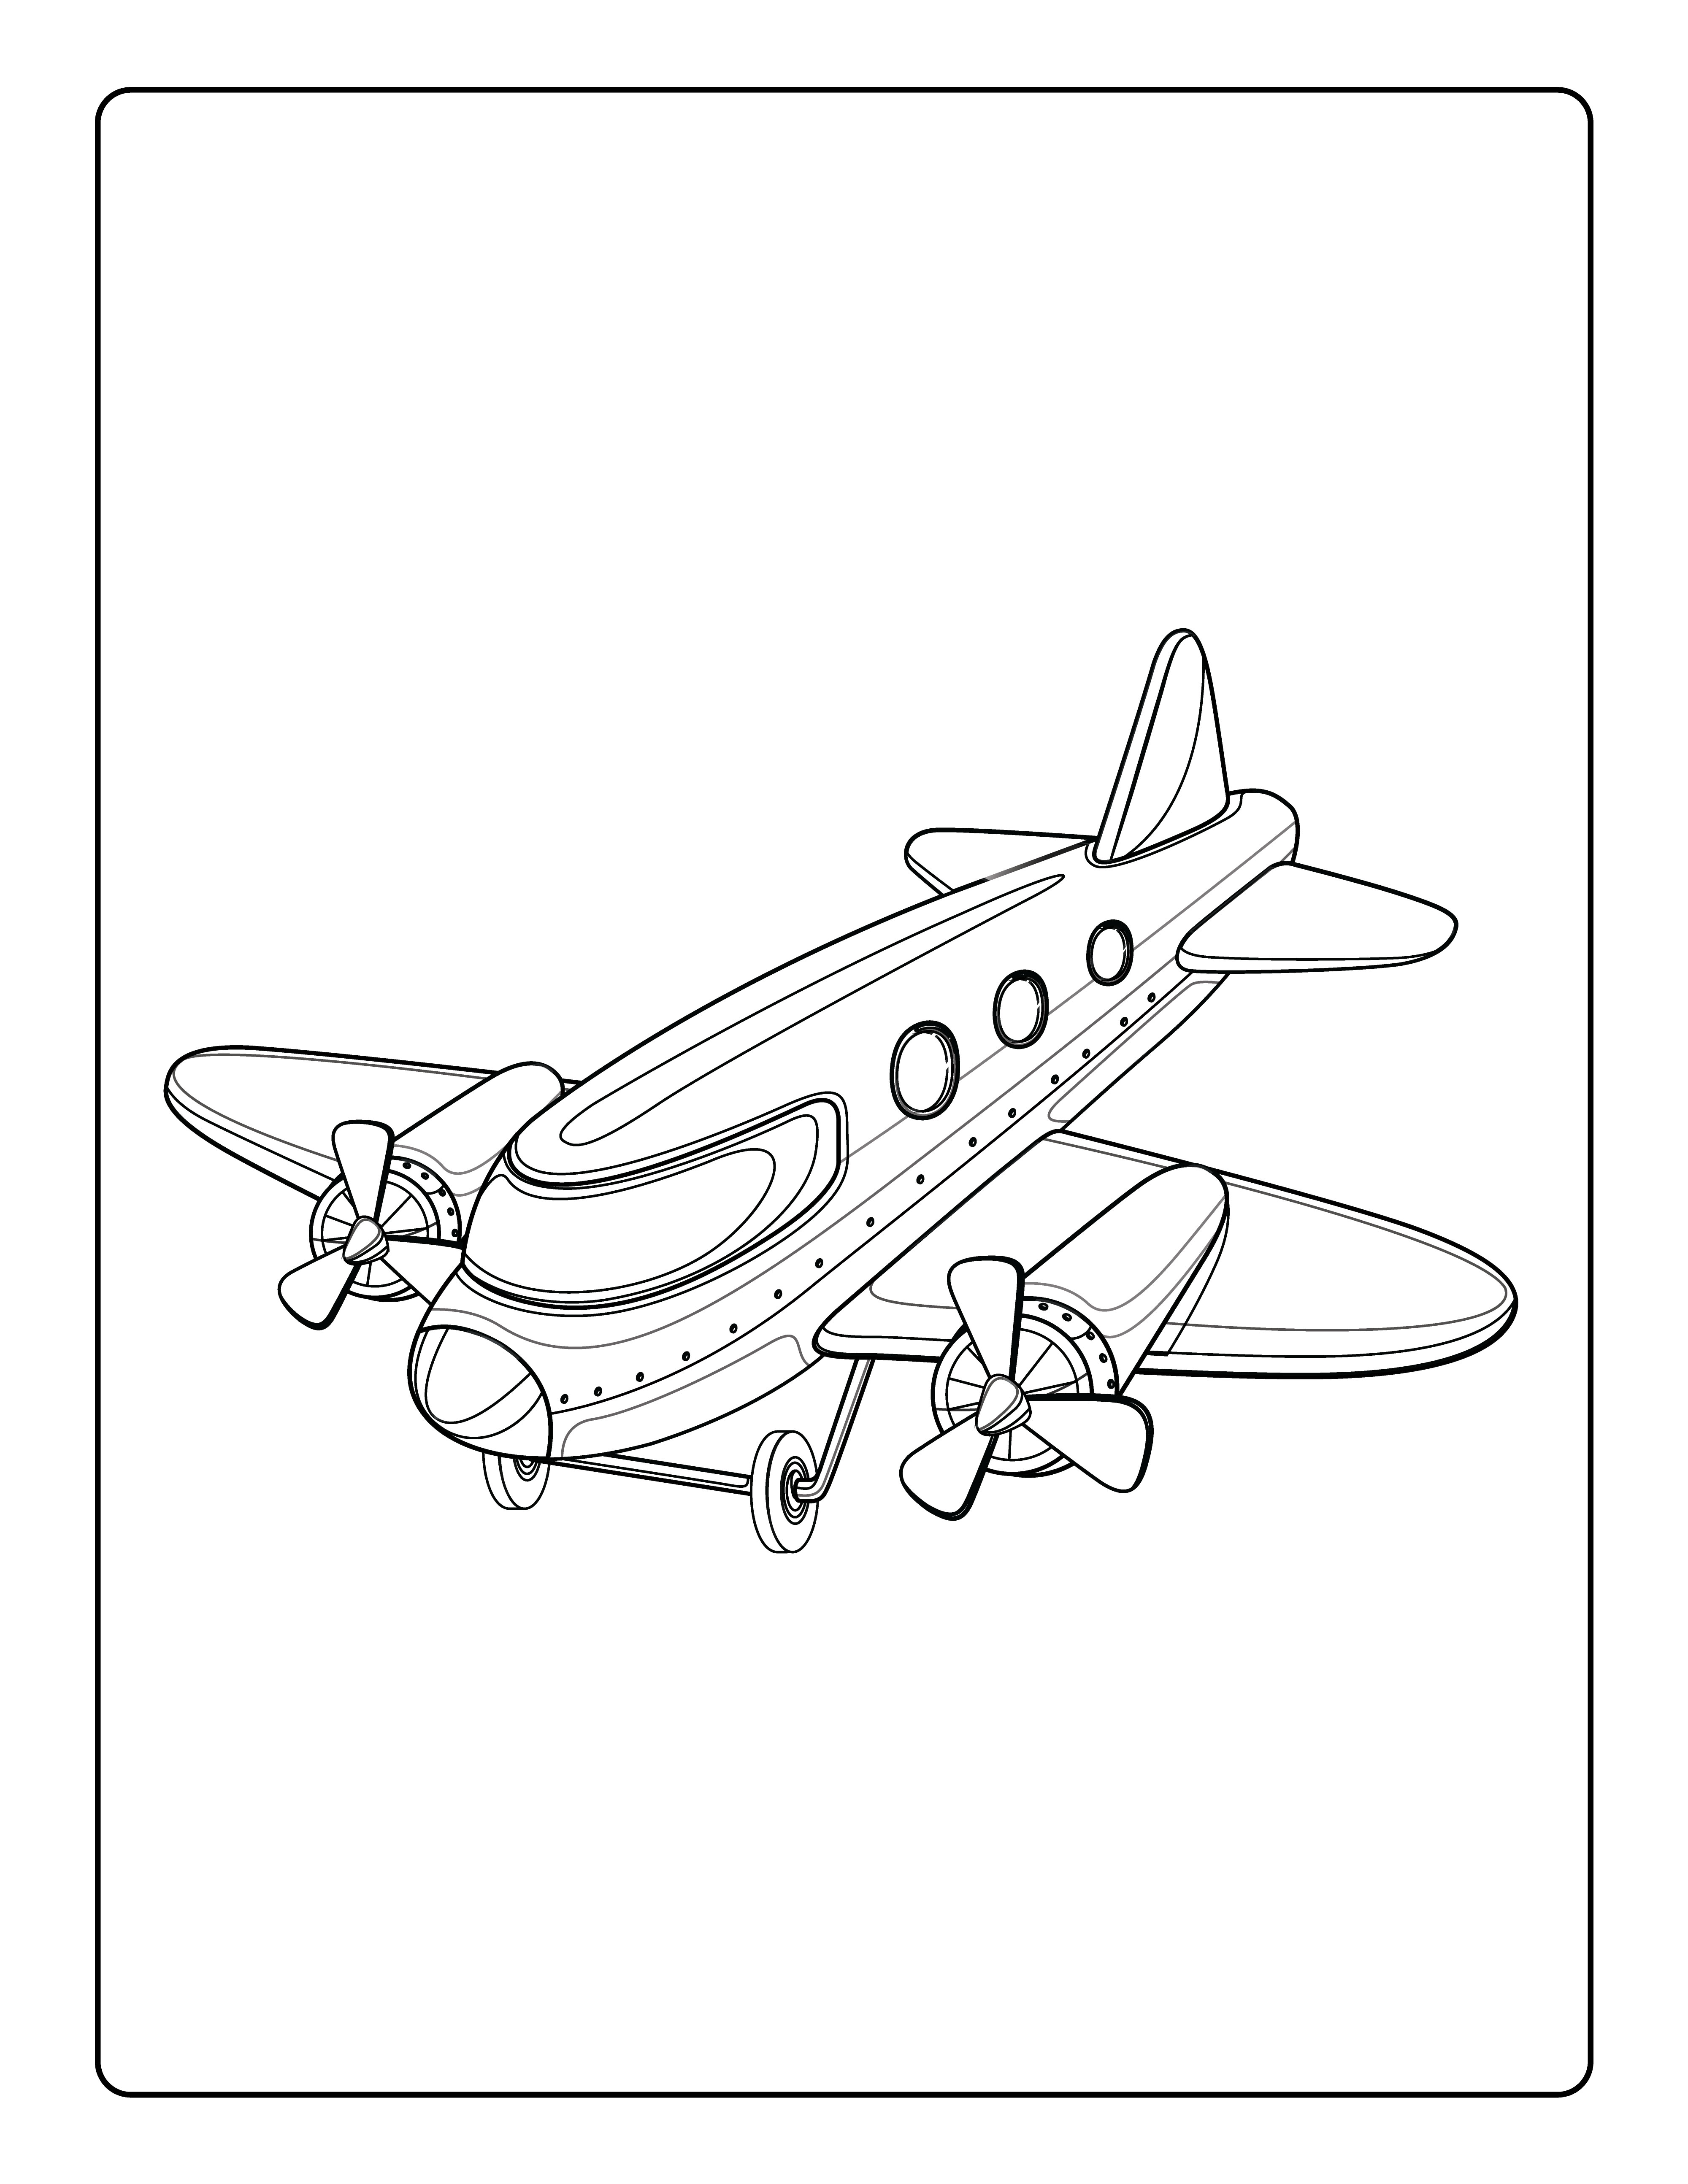 Раскраска винтокрылый самолет в полете формата А4 в высоком качестве